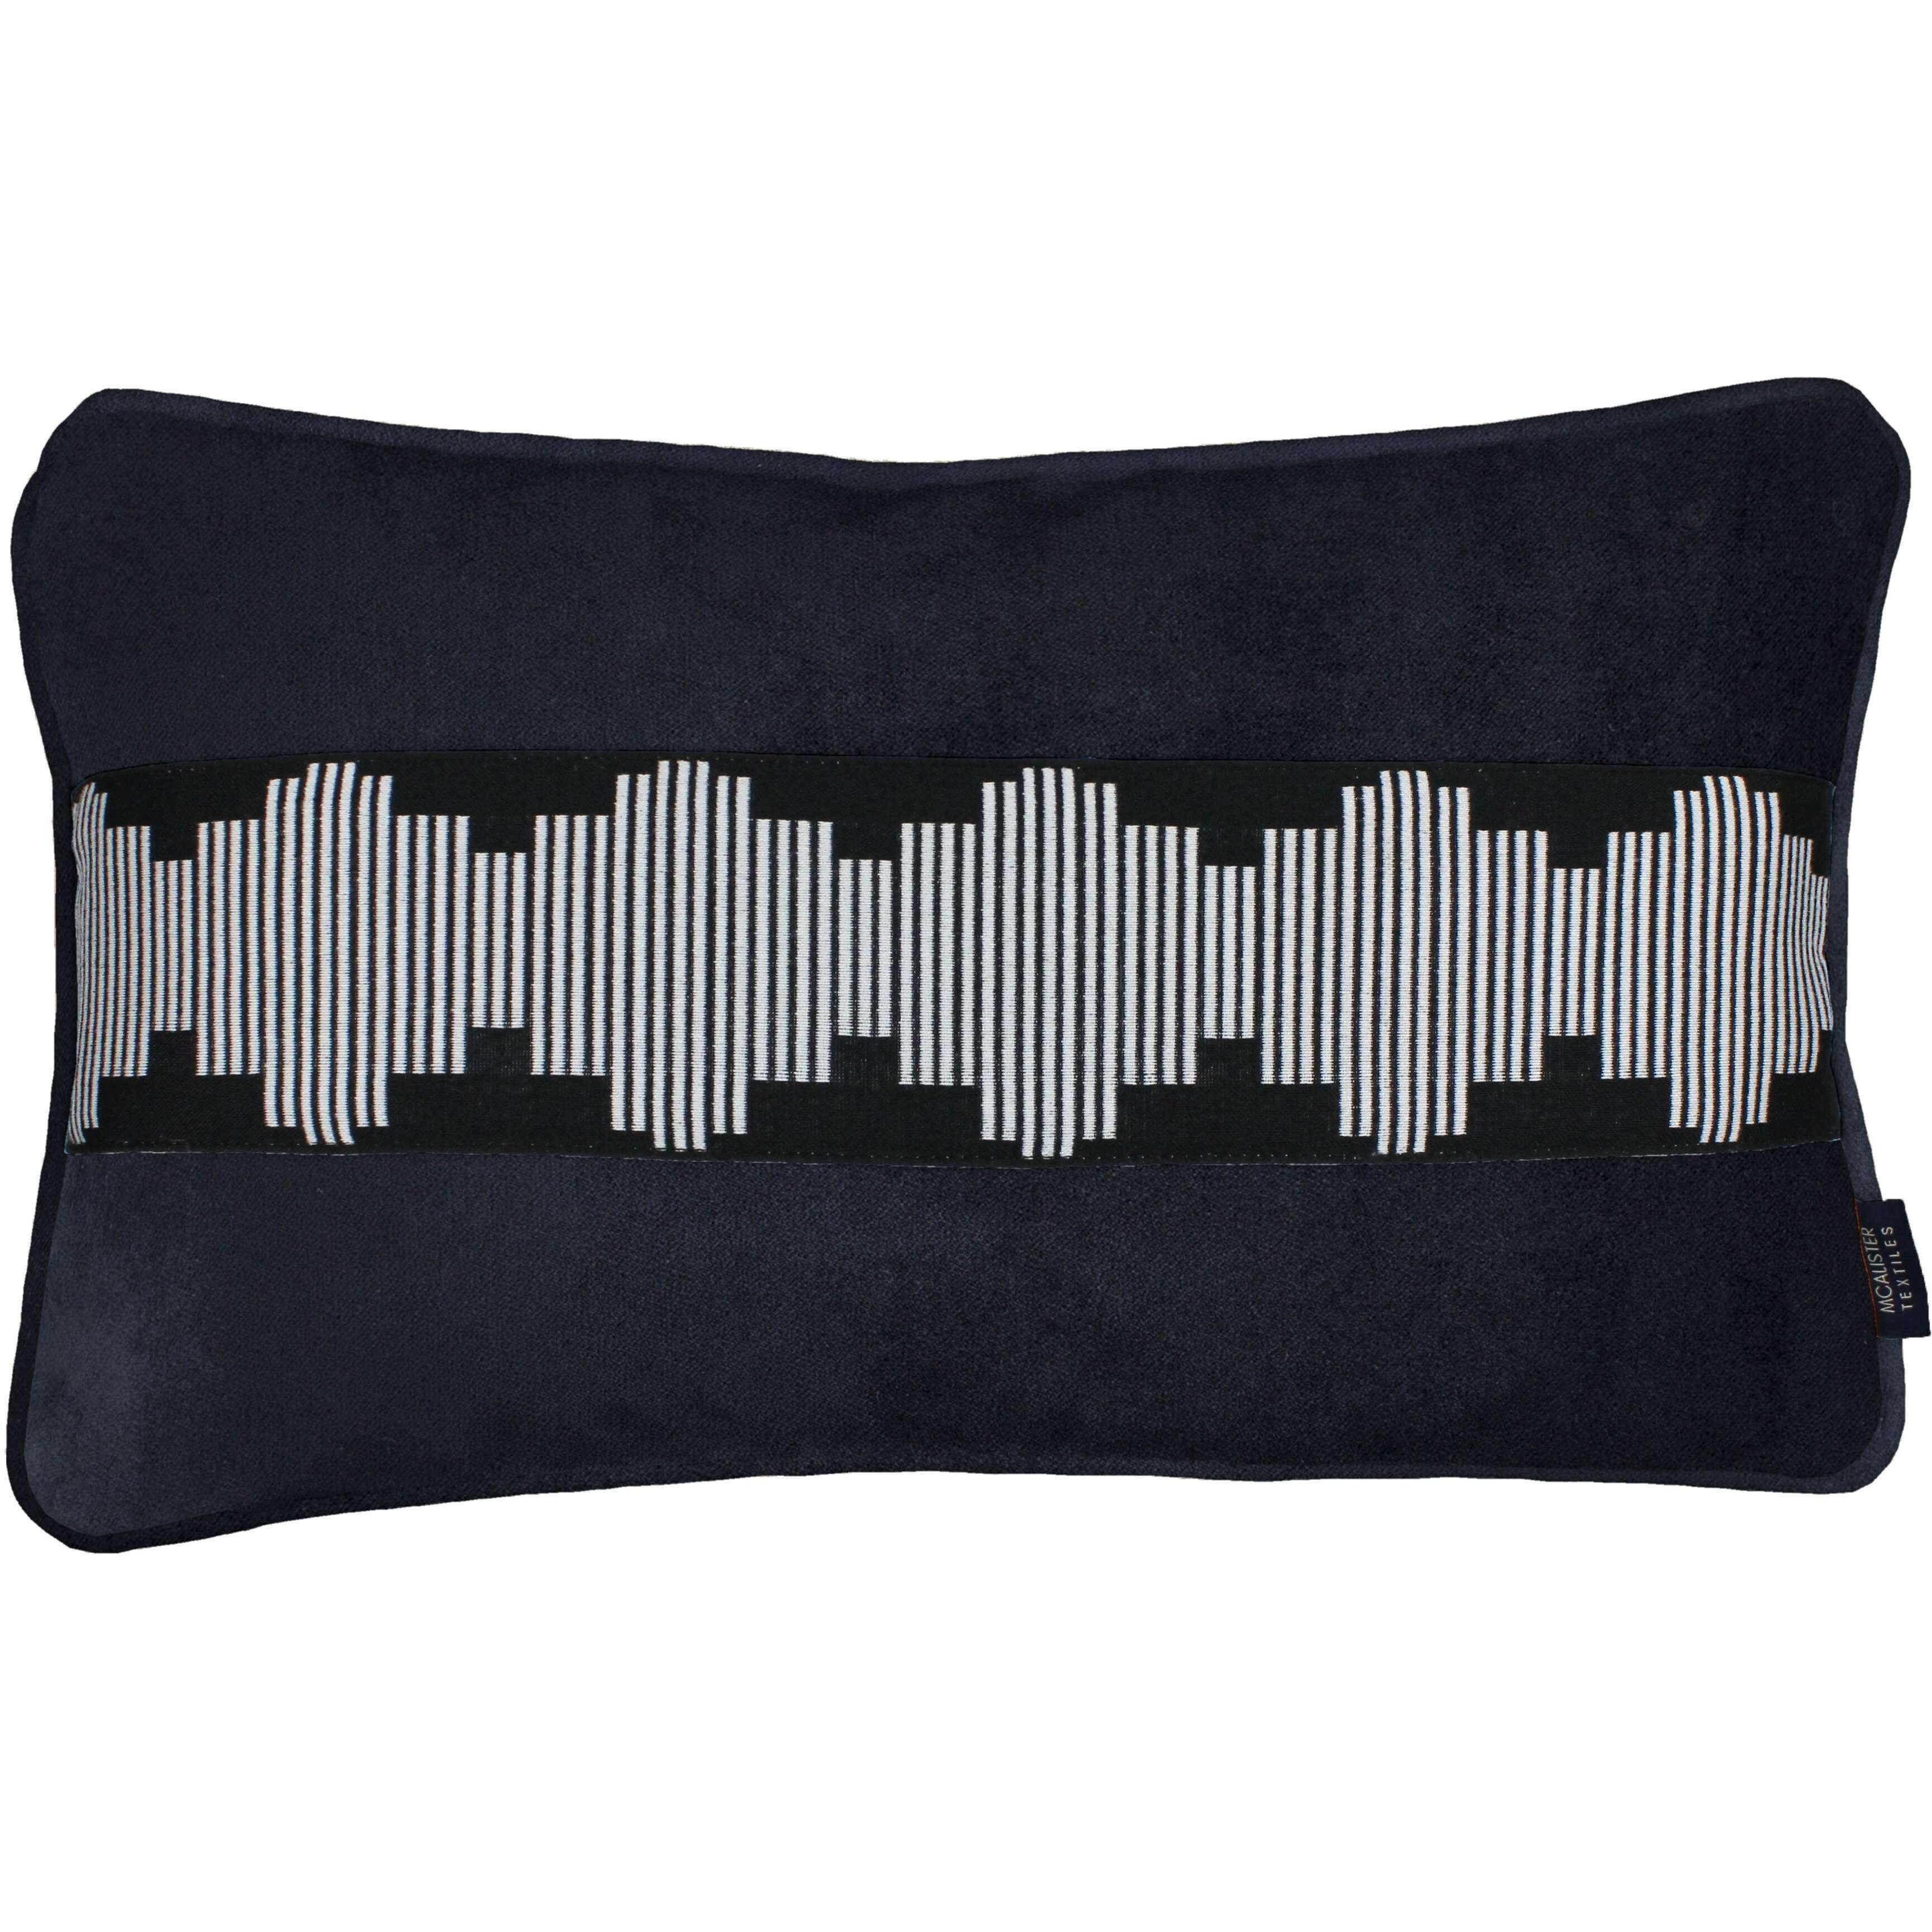 Maya Striped Black Velvet Pillow, Cover Only / 60cm x 40cm